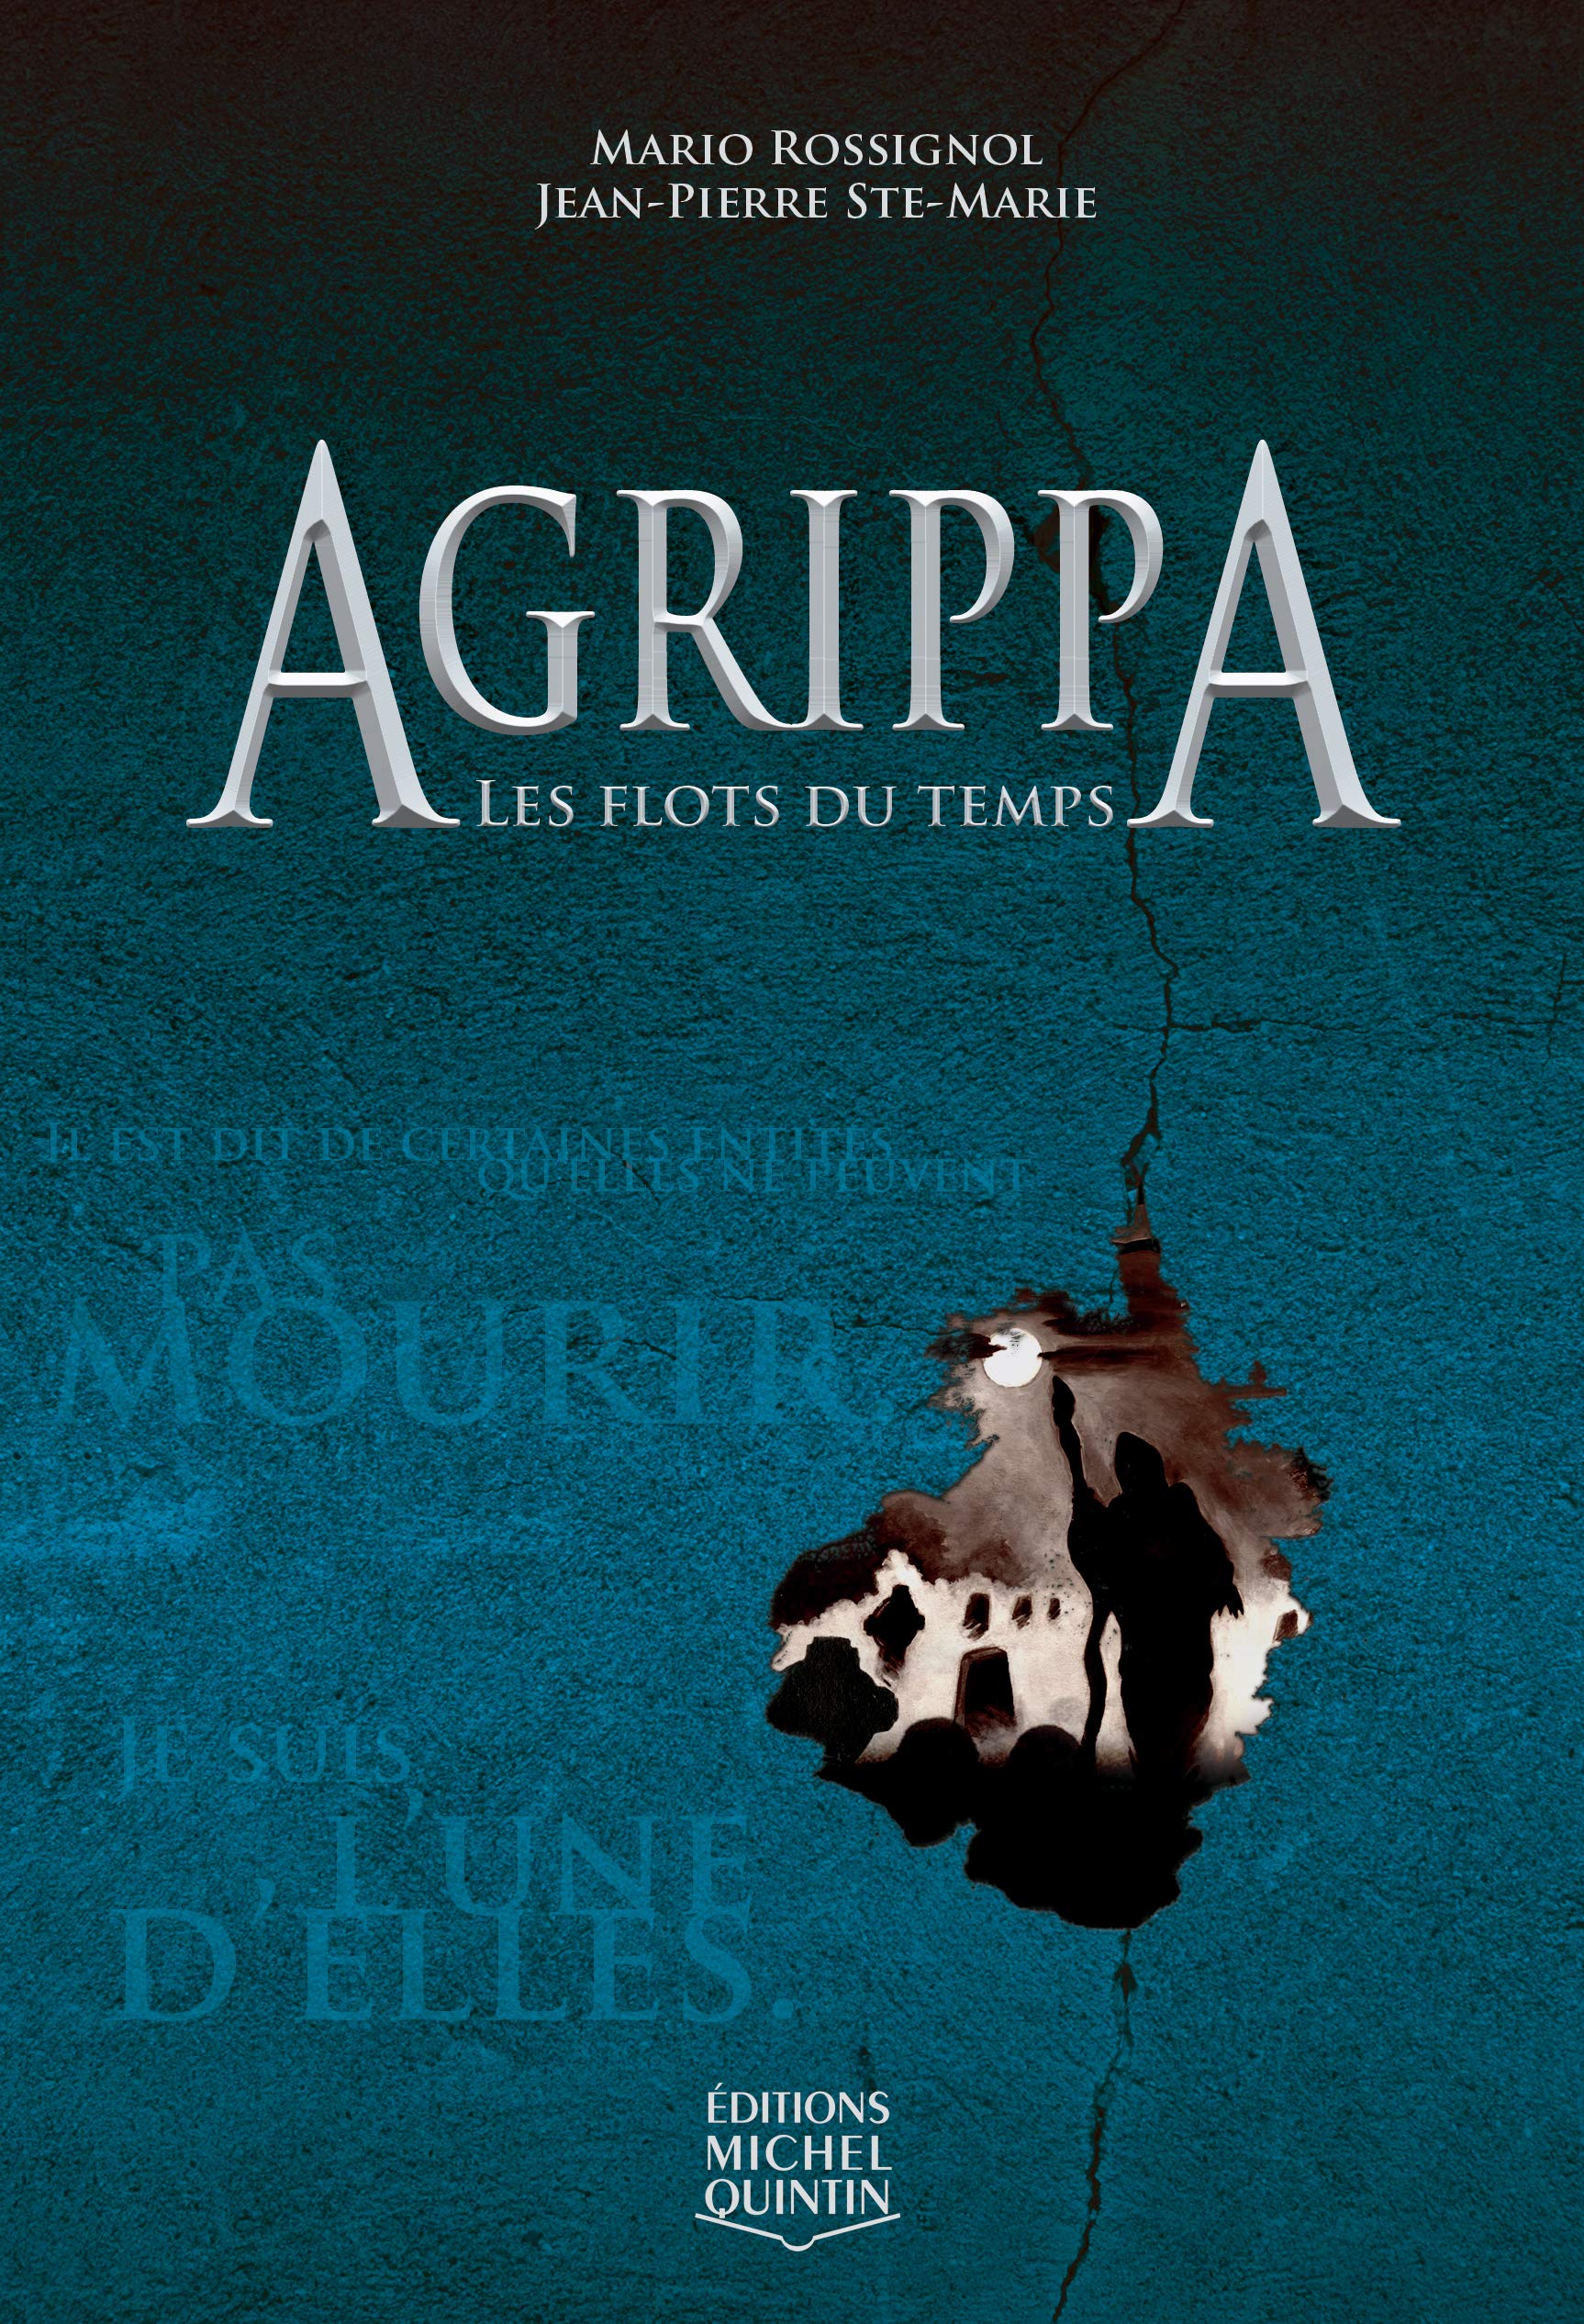 Livre ISBN 2894353502 Agrippa # 2 : Les flots du temps (Mario Rossignol)